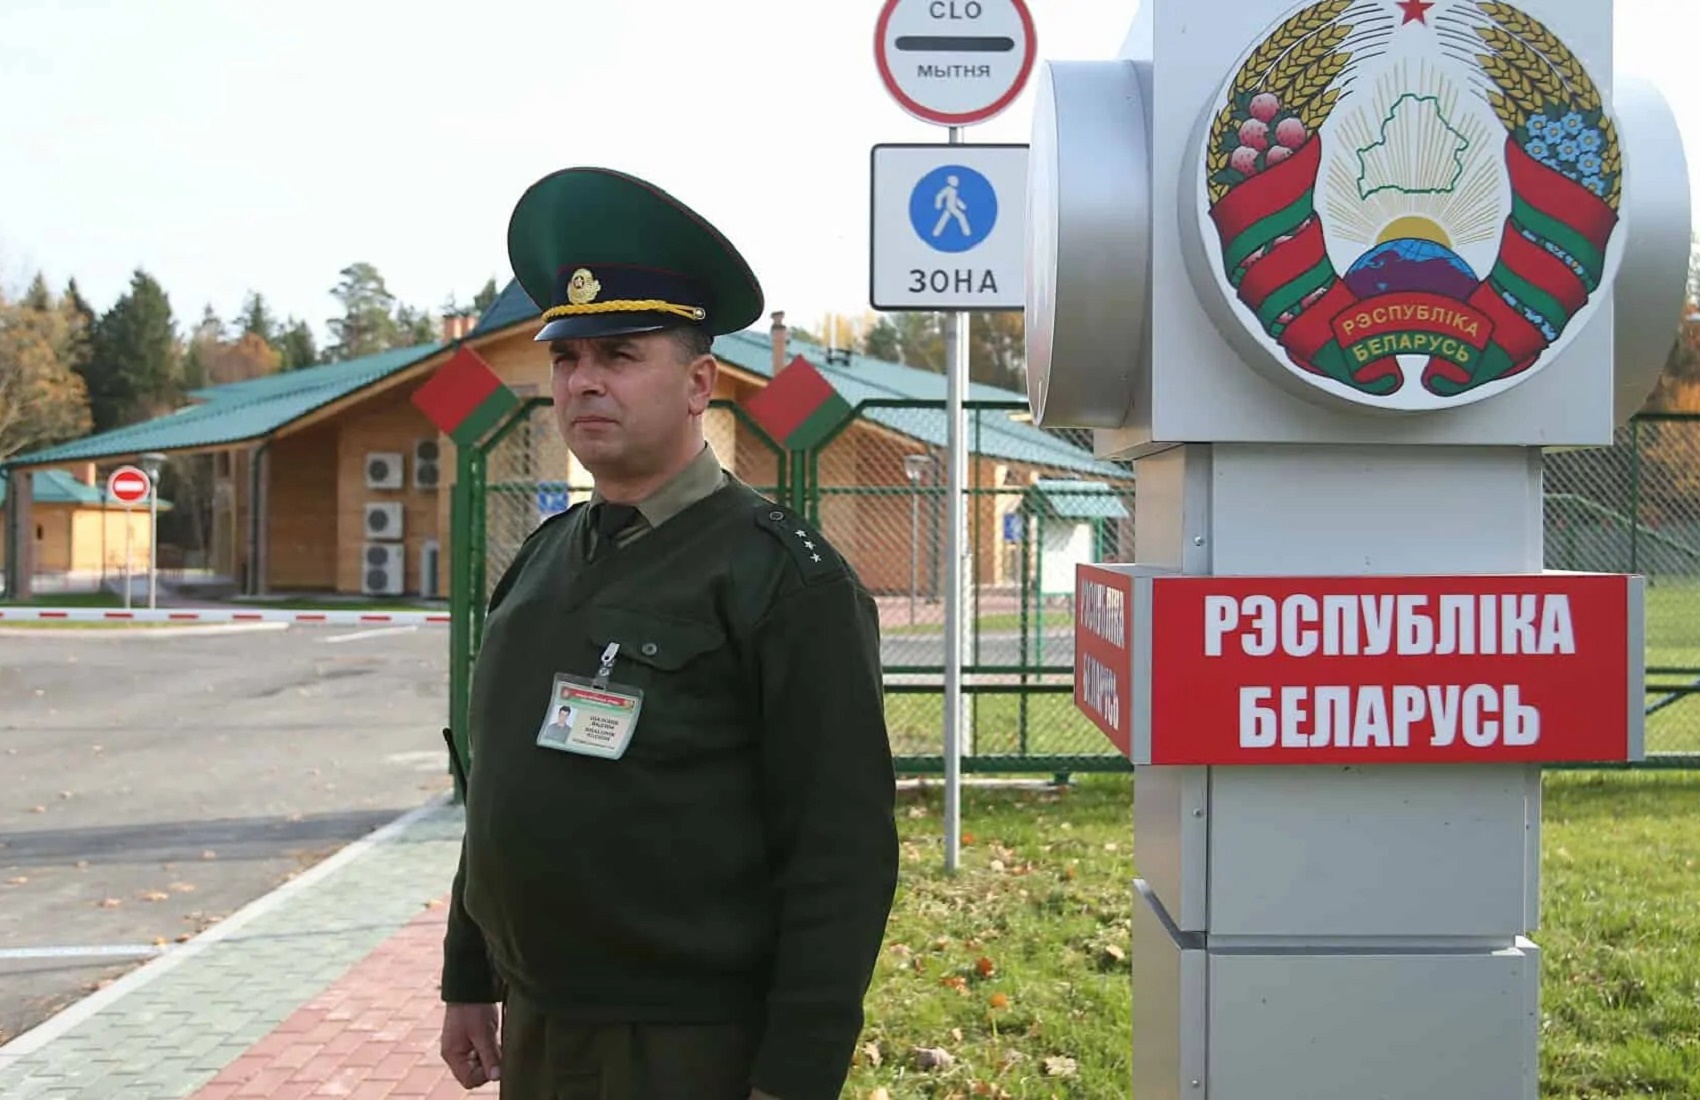 Білорусь закриває кордони для іноземців | Шарій.net